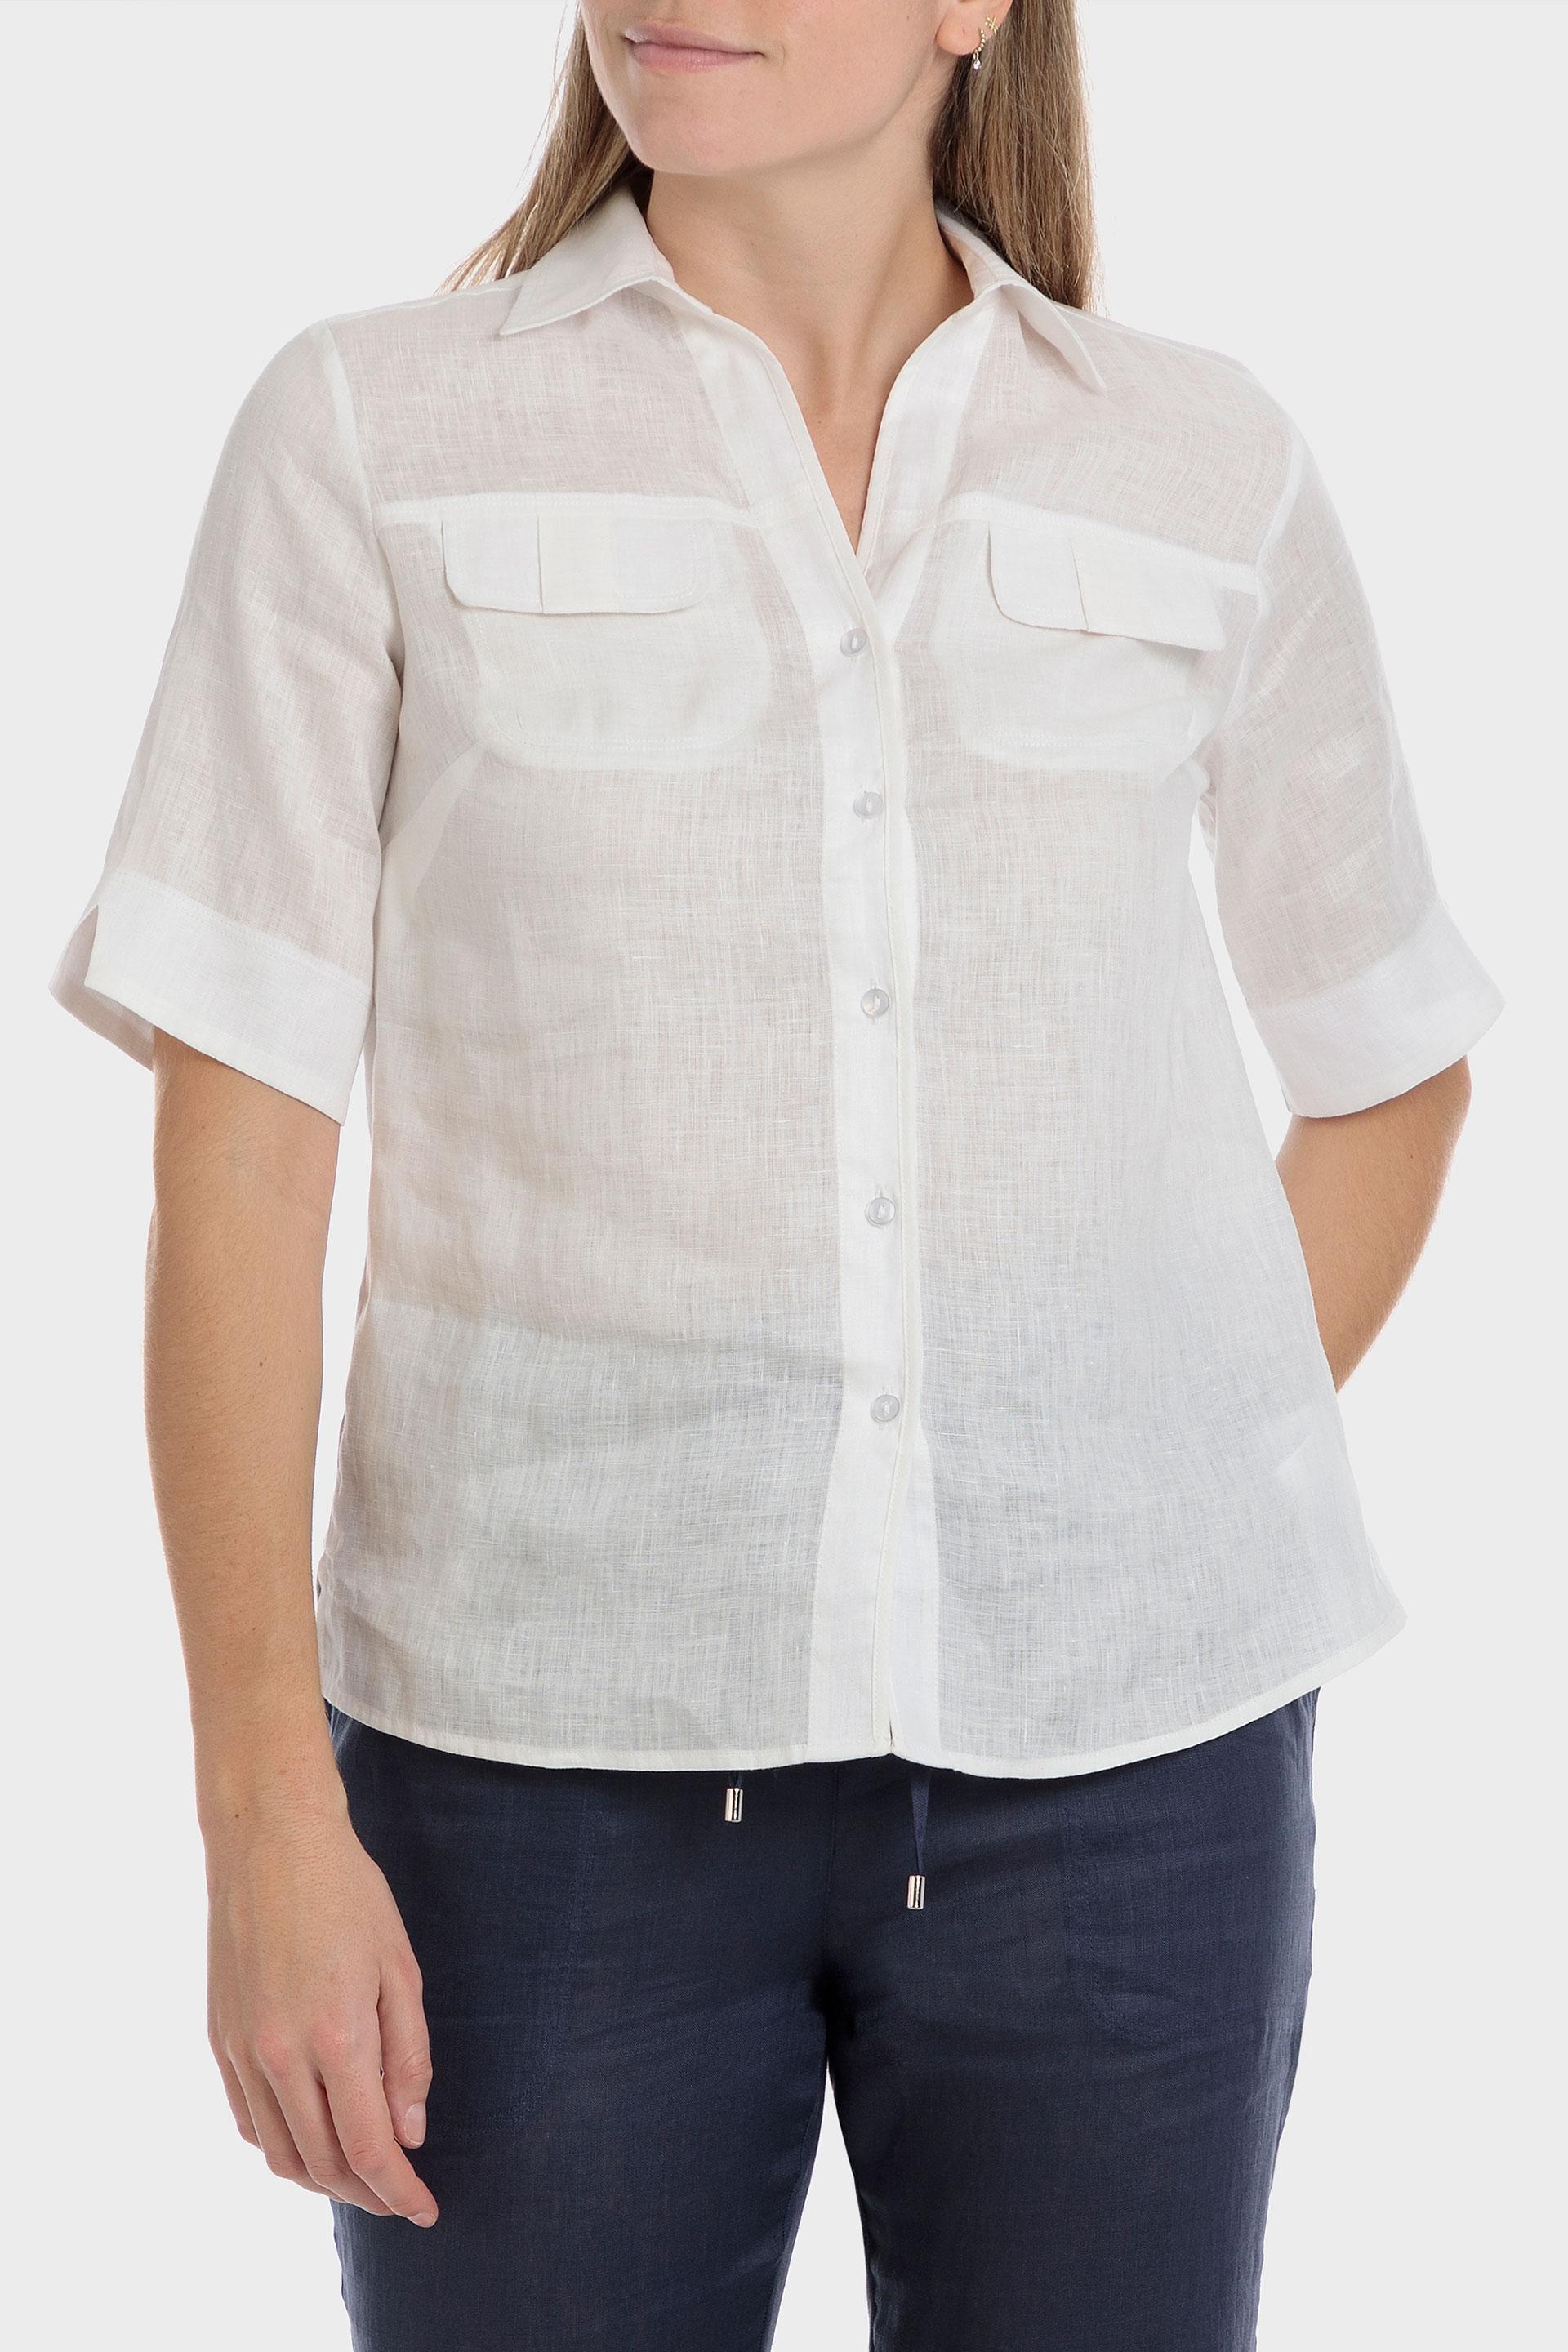 Punt Roma - White Linen Shirt